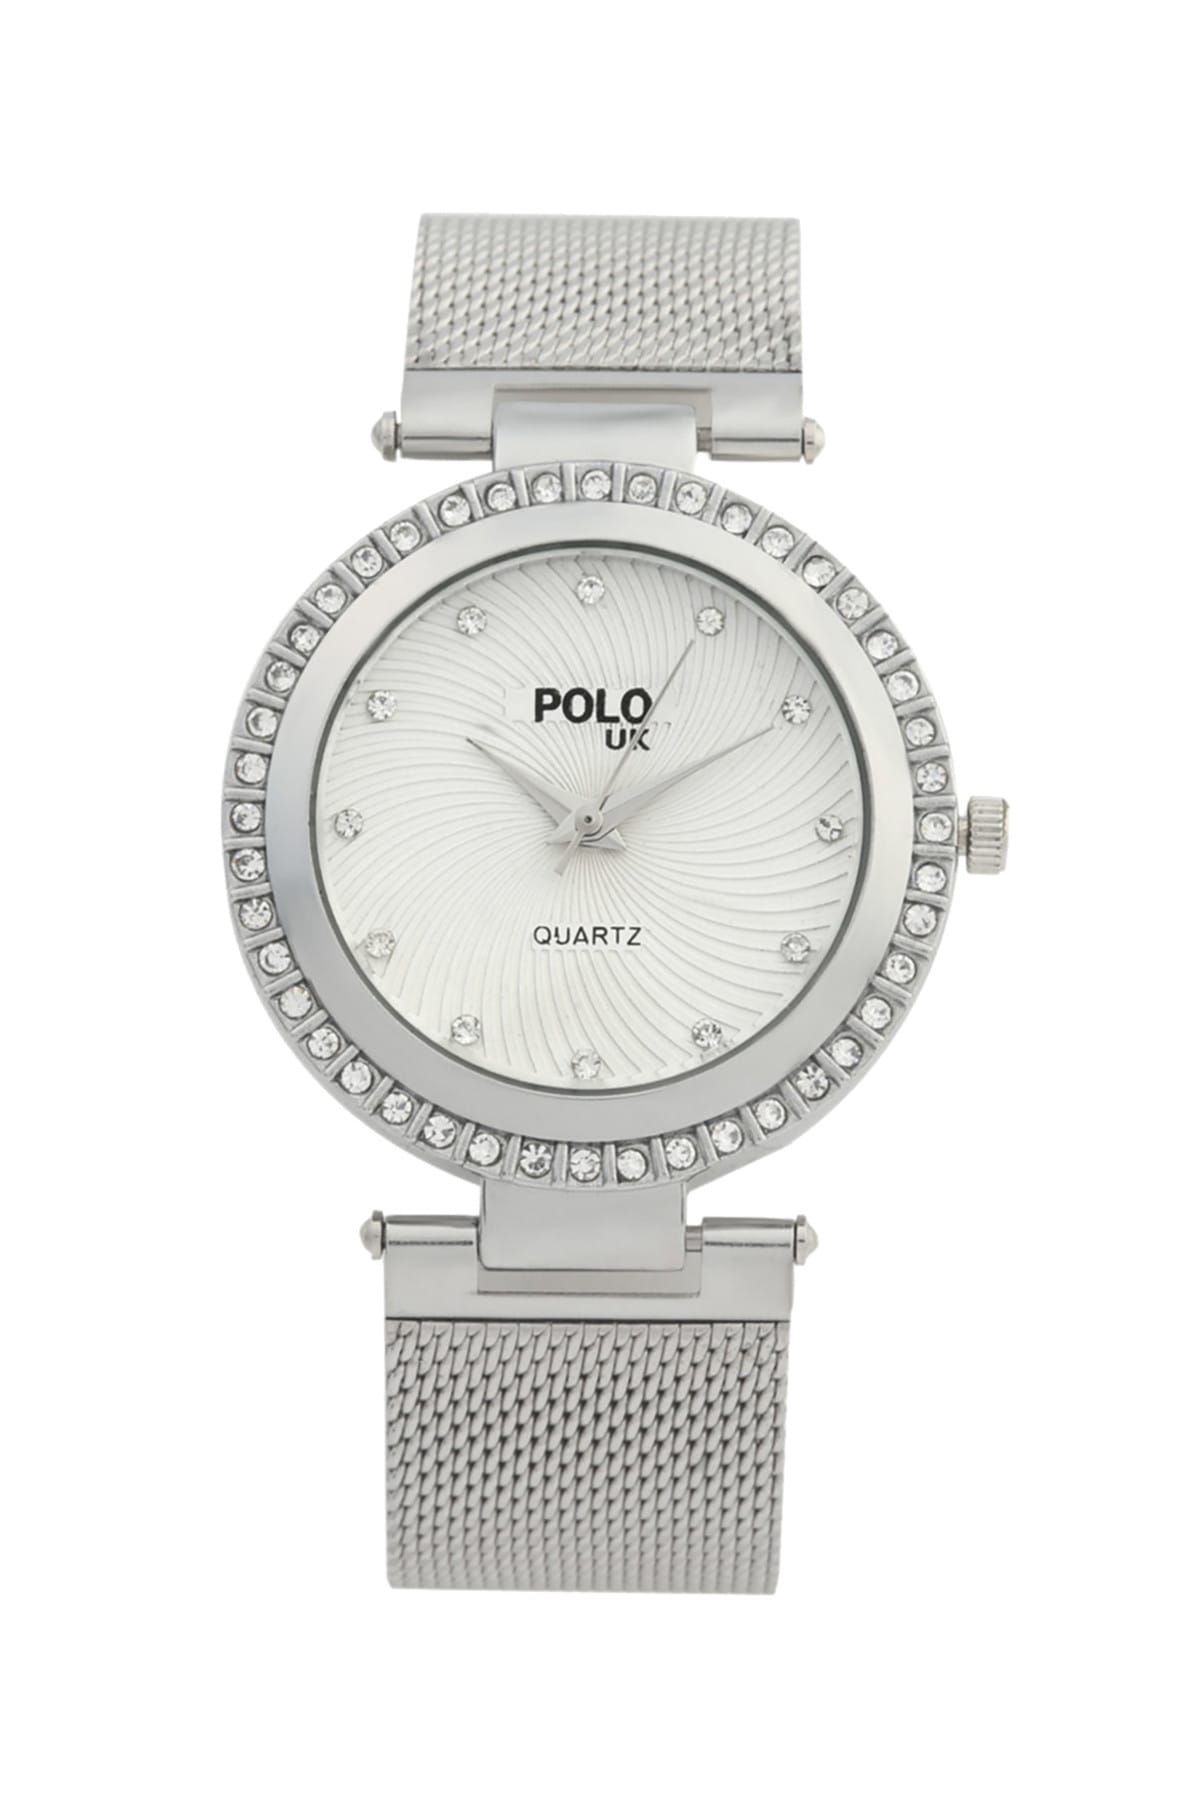 Polo U.K. Hasır Metal Kadın Kol Saati POLOUK 5008